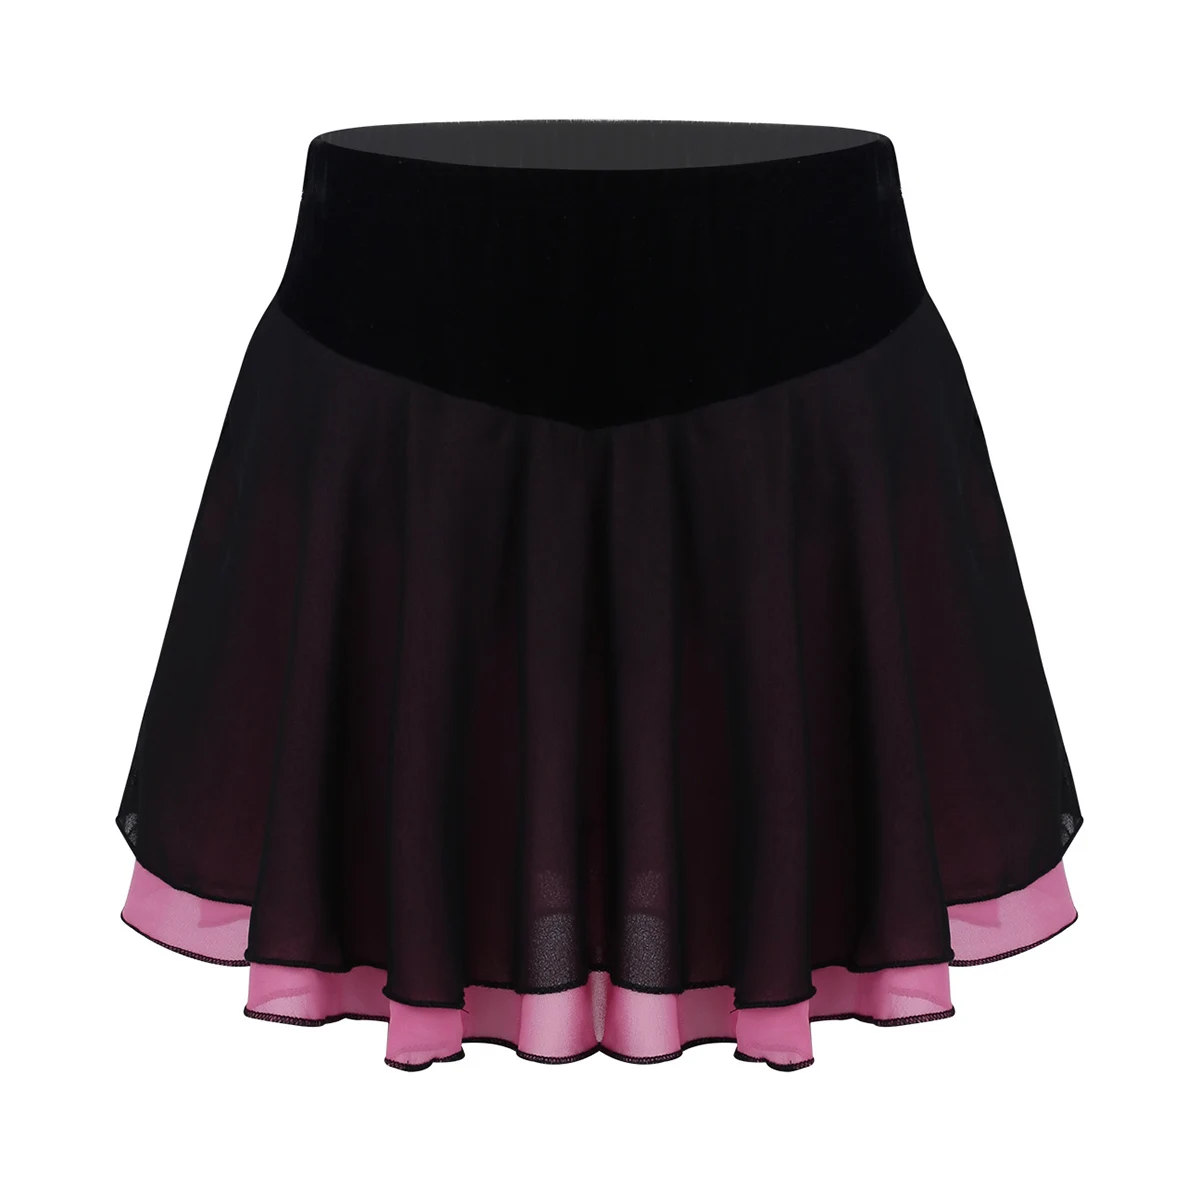 Iefiel для детей, девочек, легкая шифоновая фигурка для фигурного катания, короткая юбка для катания на коньках, лирический танцевальный костюм, тренировочное платье для латинских танцев - Цвет: Black Rose Red